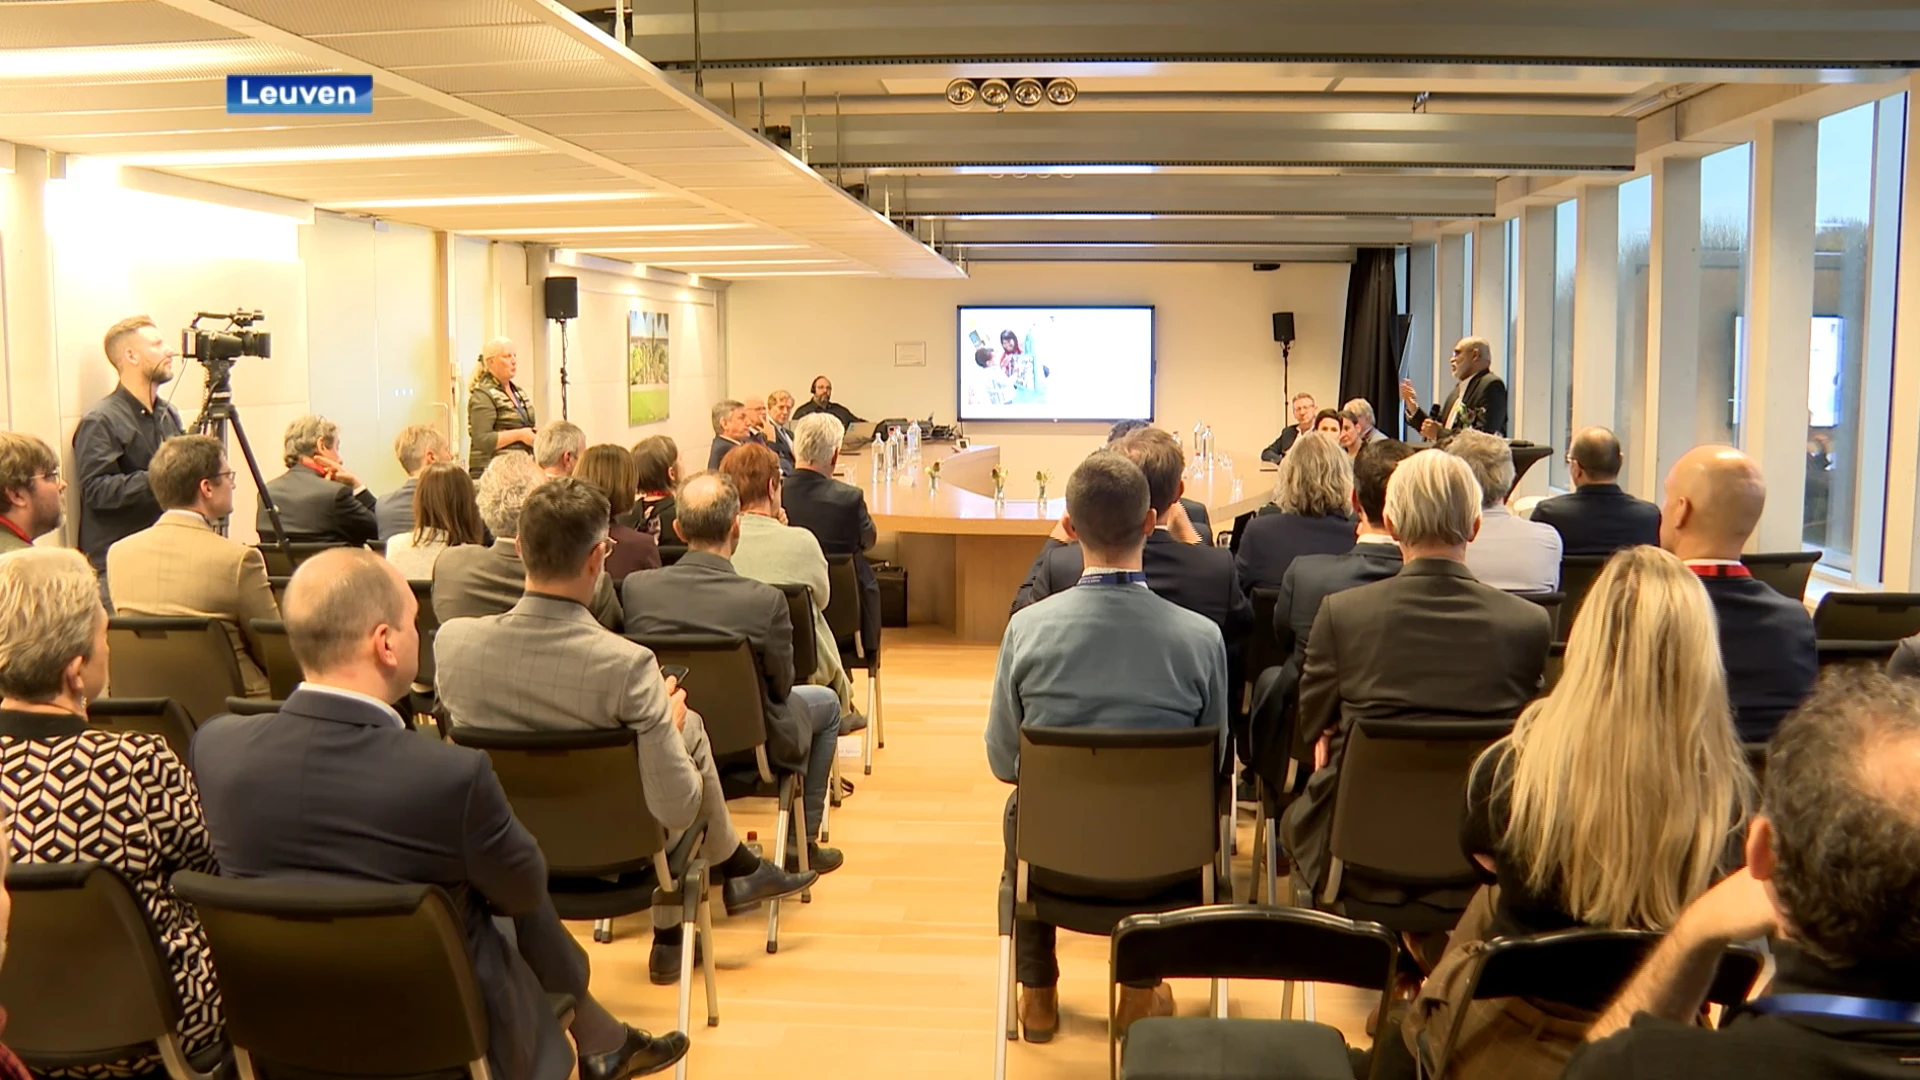 Farmabedrijf UCB opent in Leuven eerste Vlaamse onderzoekscentrum voor gentherapie: "In Leuven zit heel wat talent dat hier aan de slag kan"